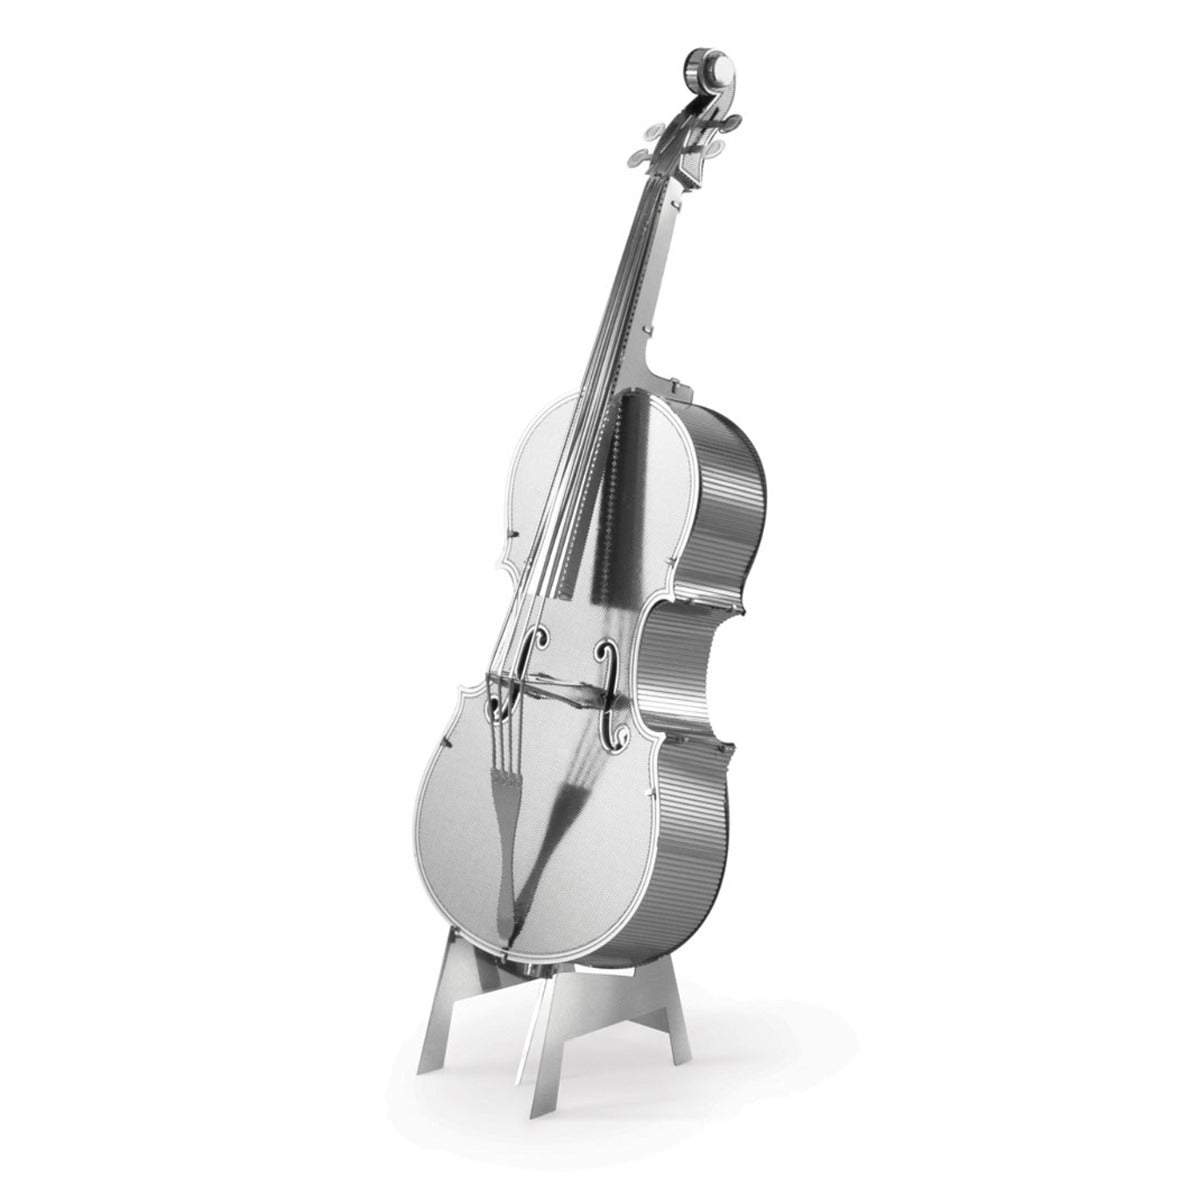 Metal Earth Metallbausätze MMS081 Bass Fiddle Bass Geige Metall Modell